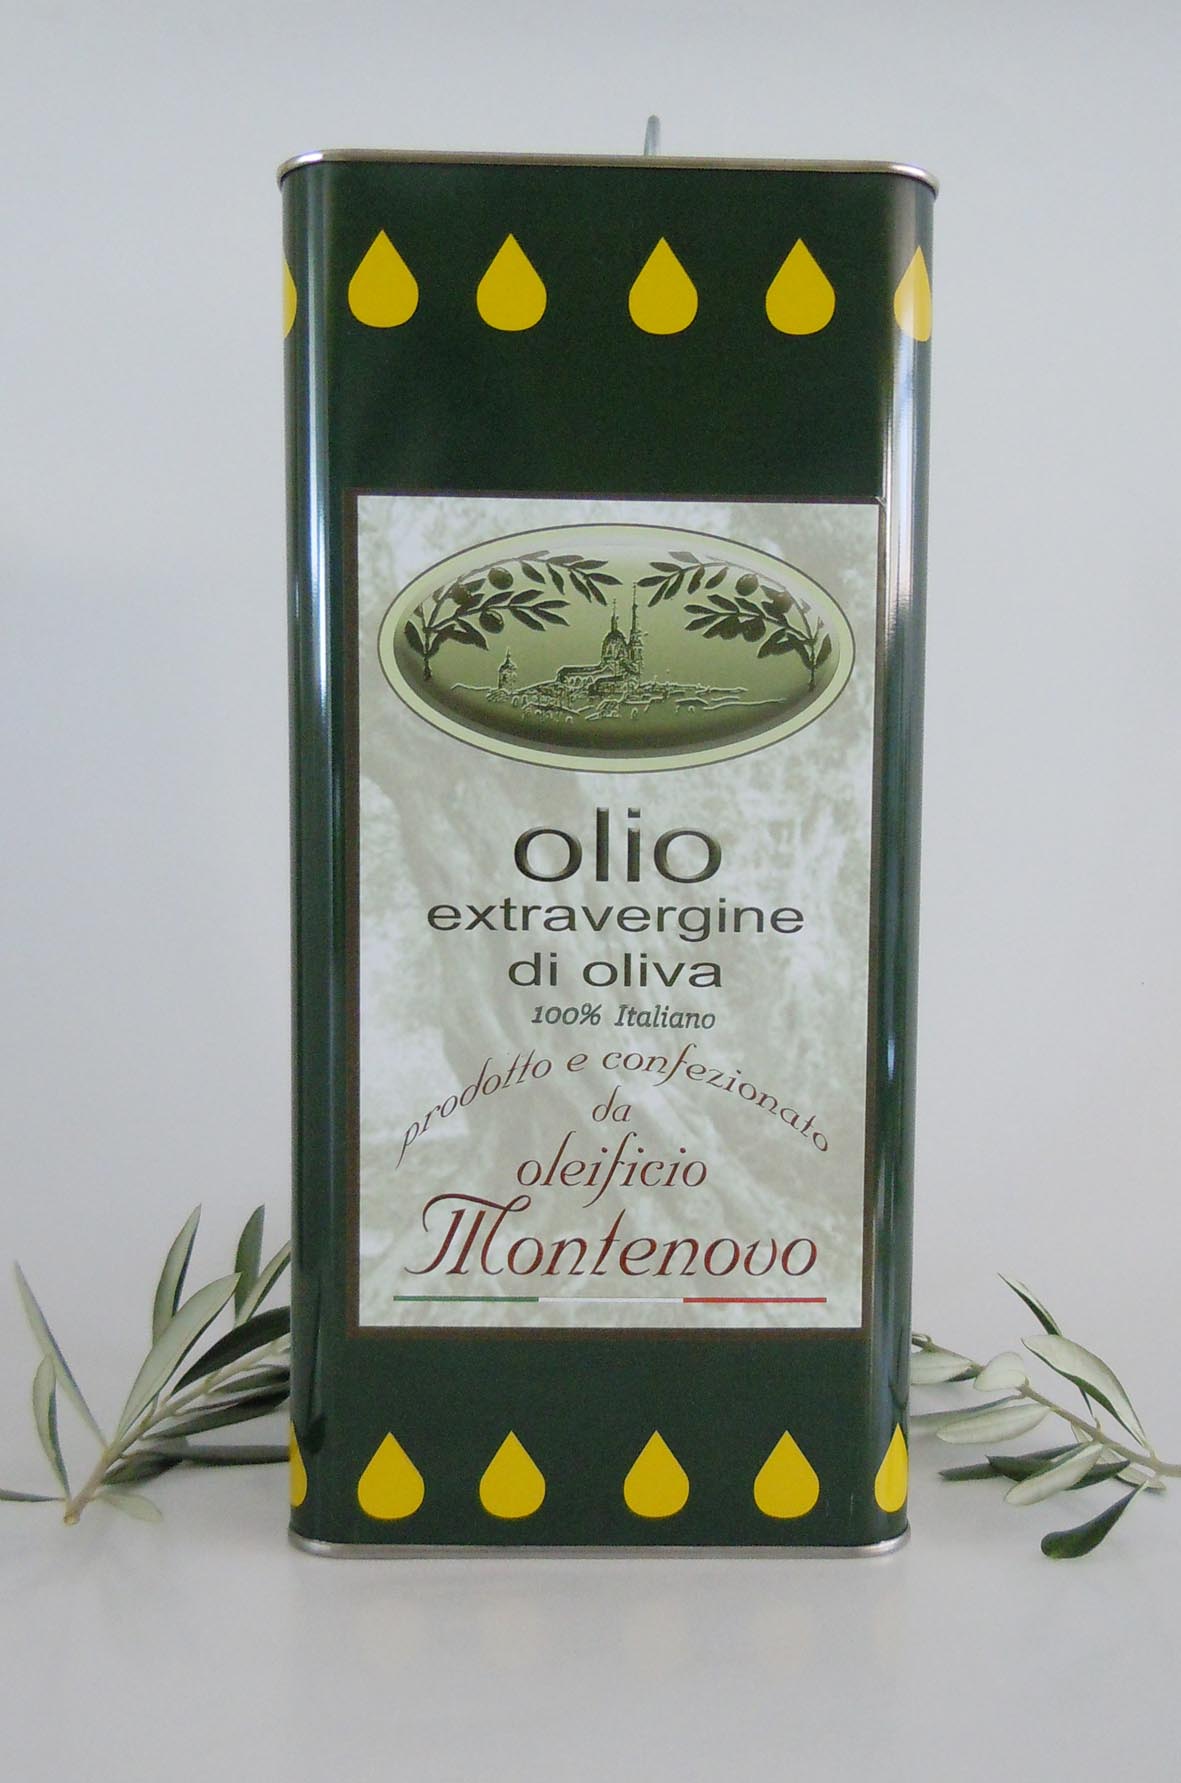 lattina olio extravergine di oliva "Montenovo" 5 litri